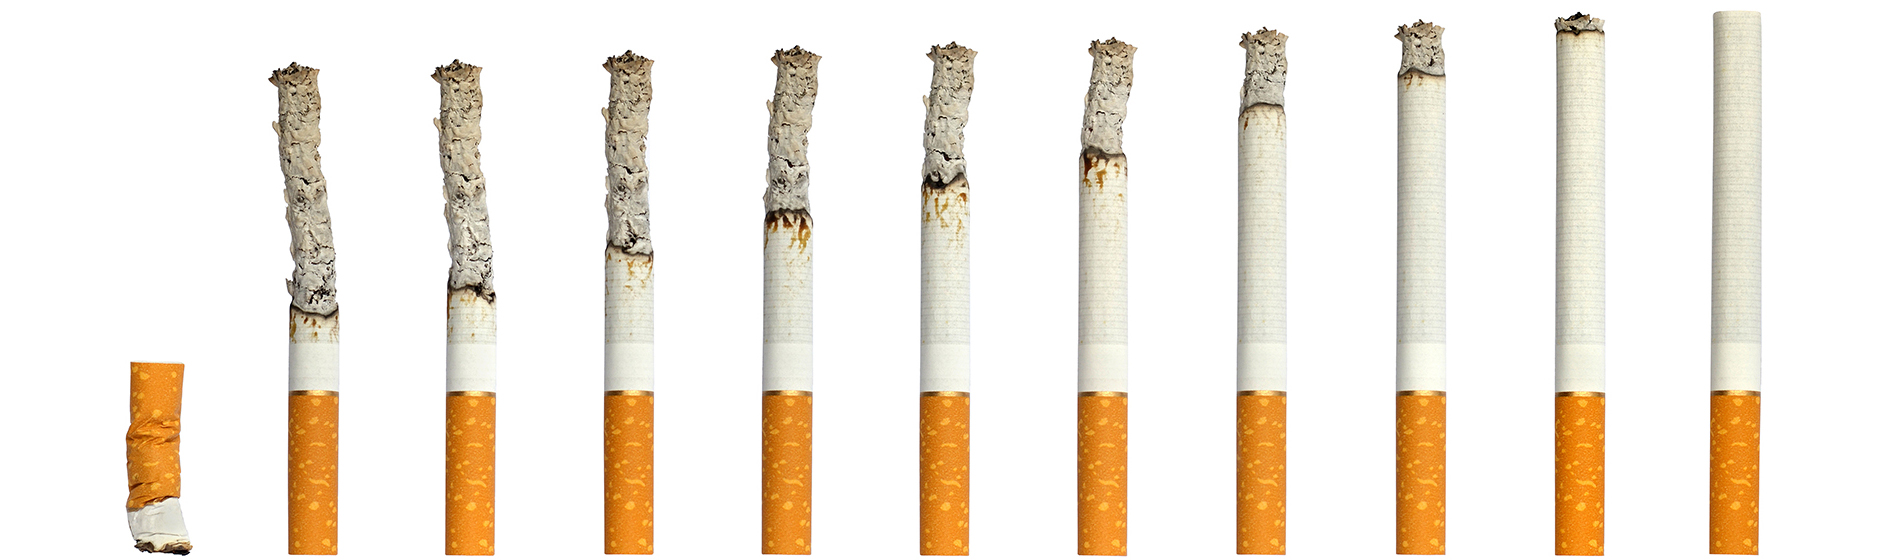 Patch anti tabac avis